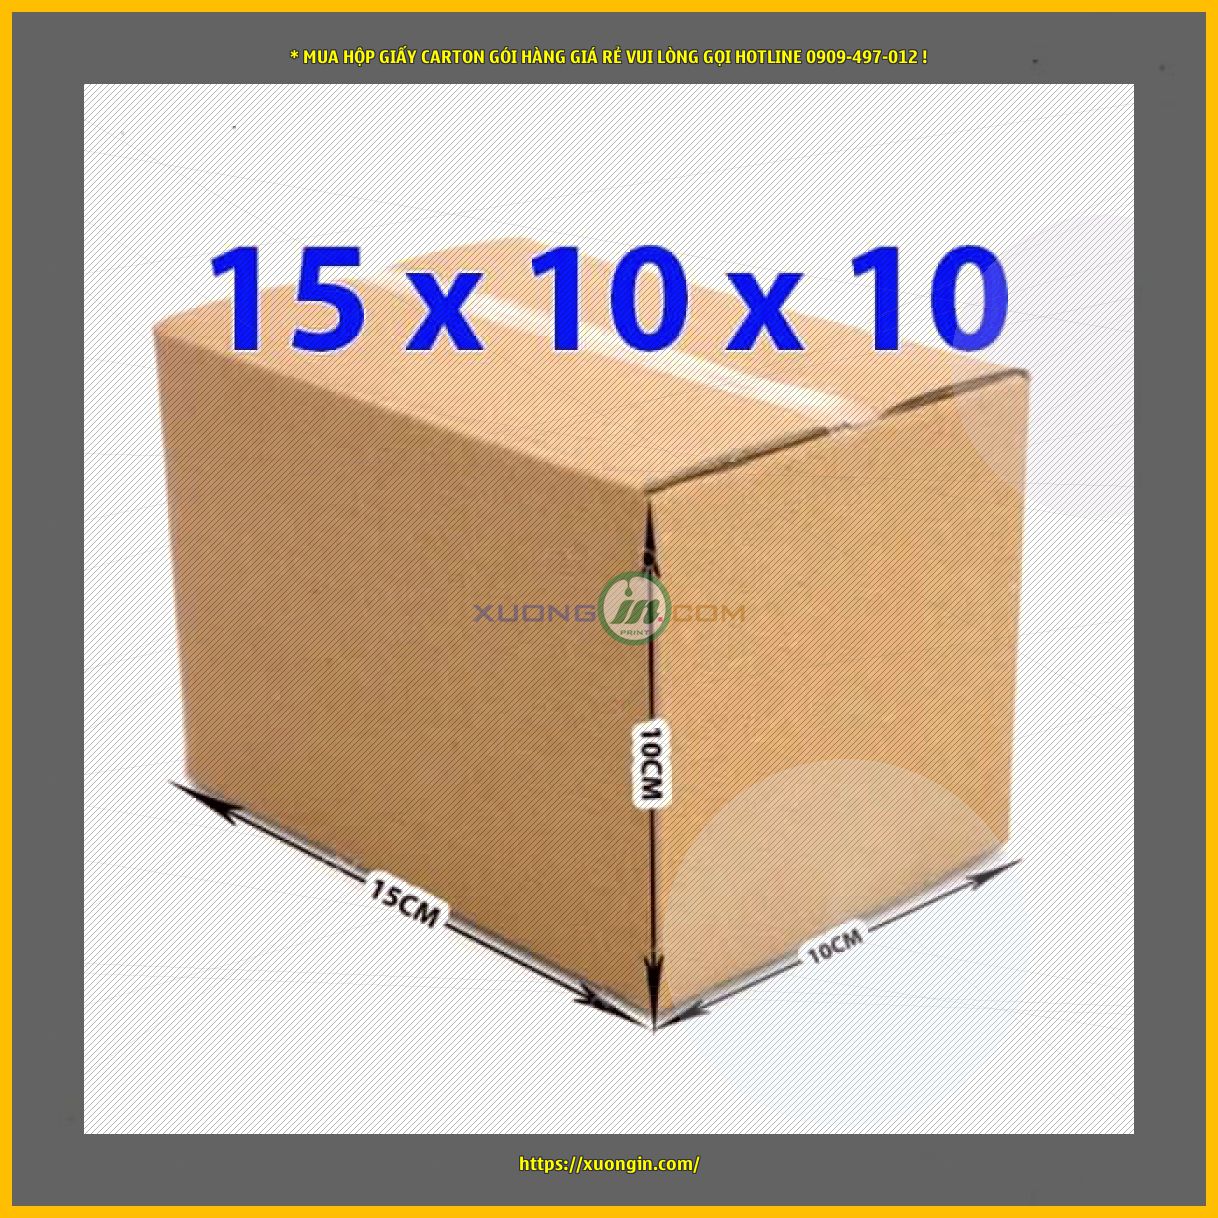 Hộp carton 3 lớp nhỏ đóng hàng 15x10x10 cm - Combo 200 hộp giá rẻ, giao hàng tận nơi.